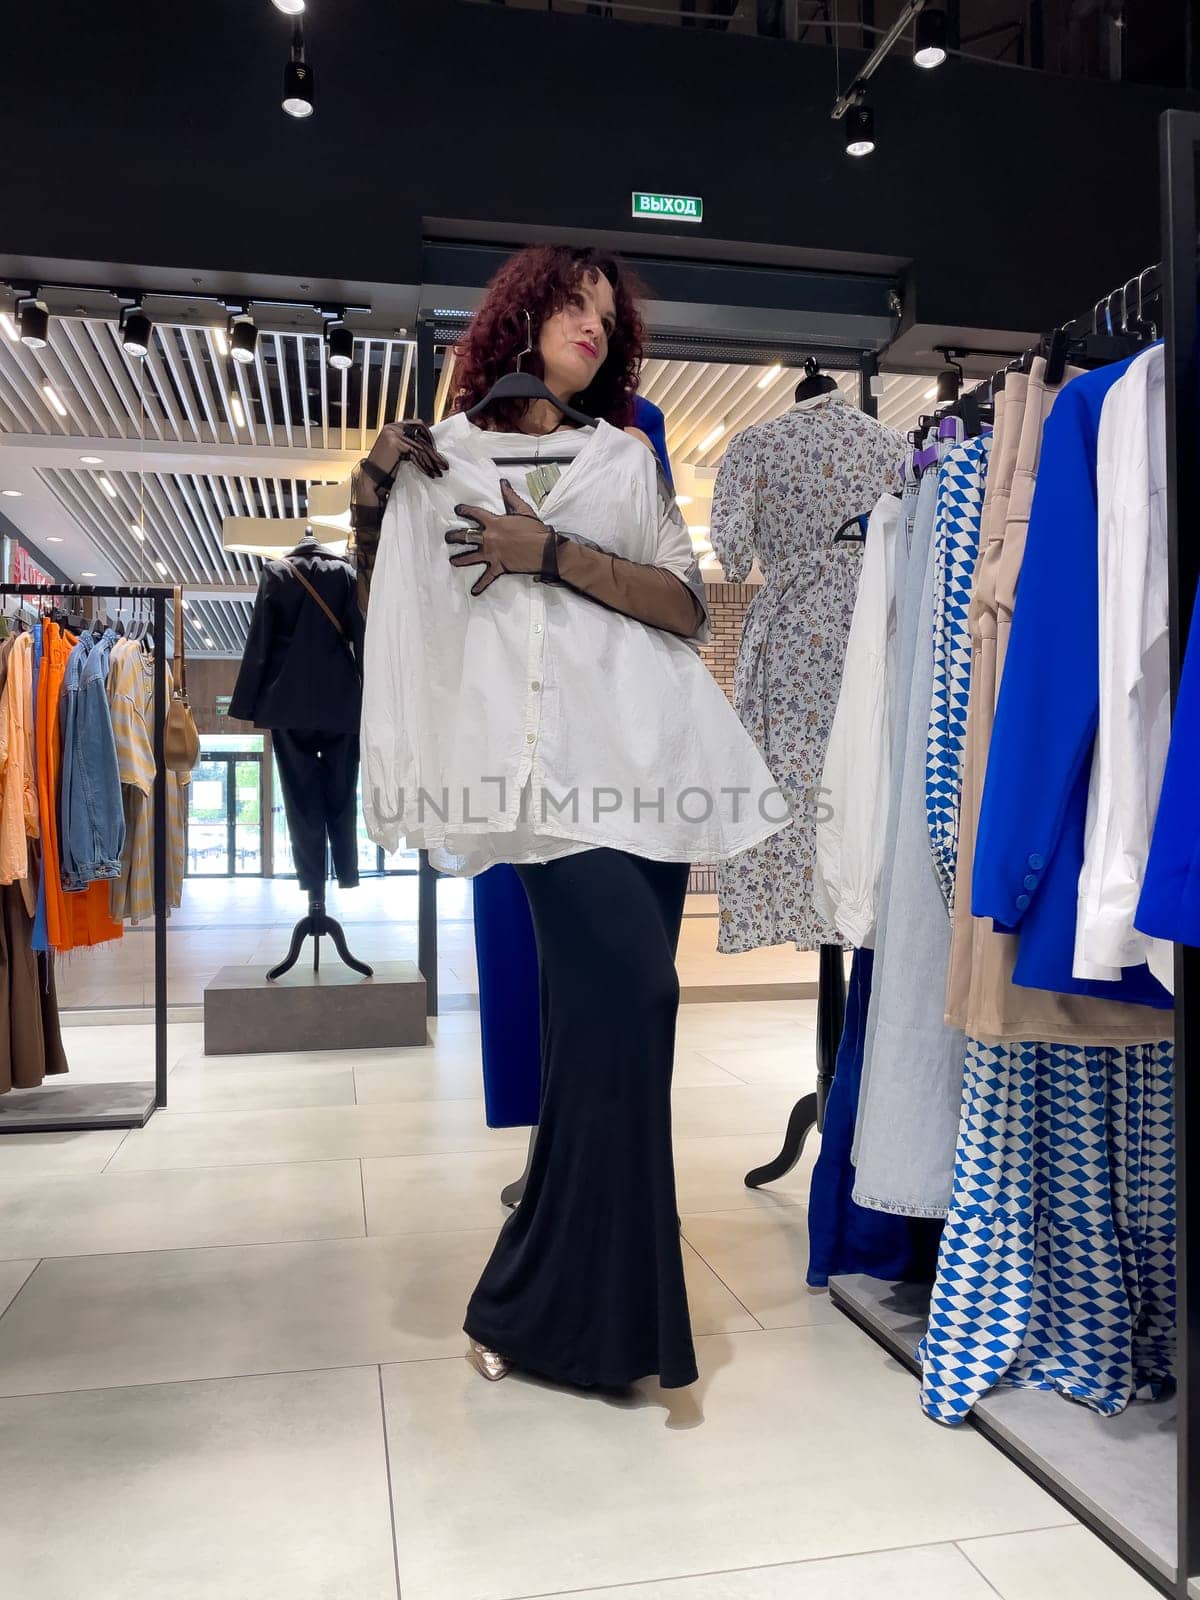 Shopping woman, women's fashion clothes in a store, boutique. Woman choosing clothes in a store by Matiunina